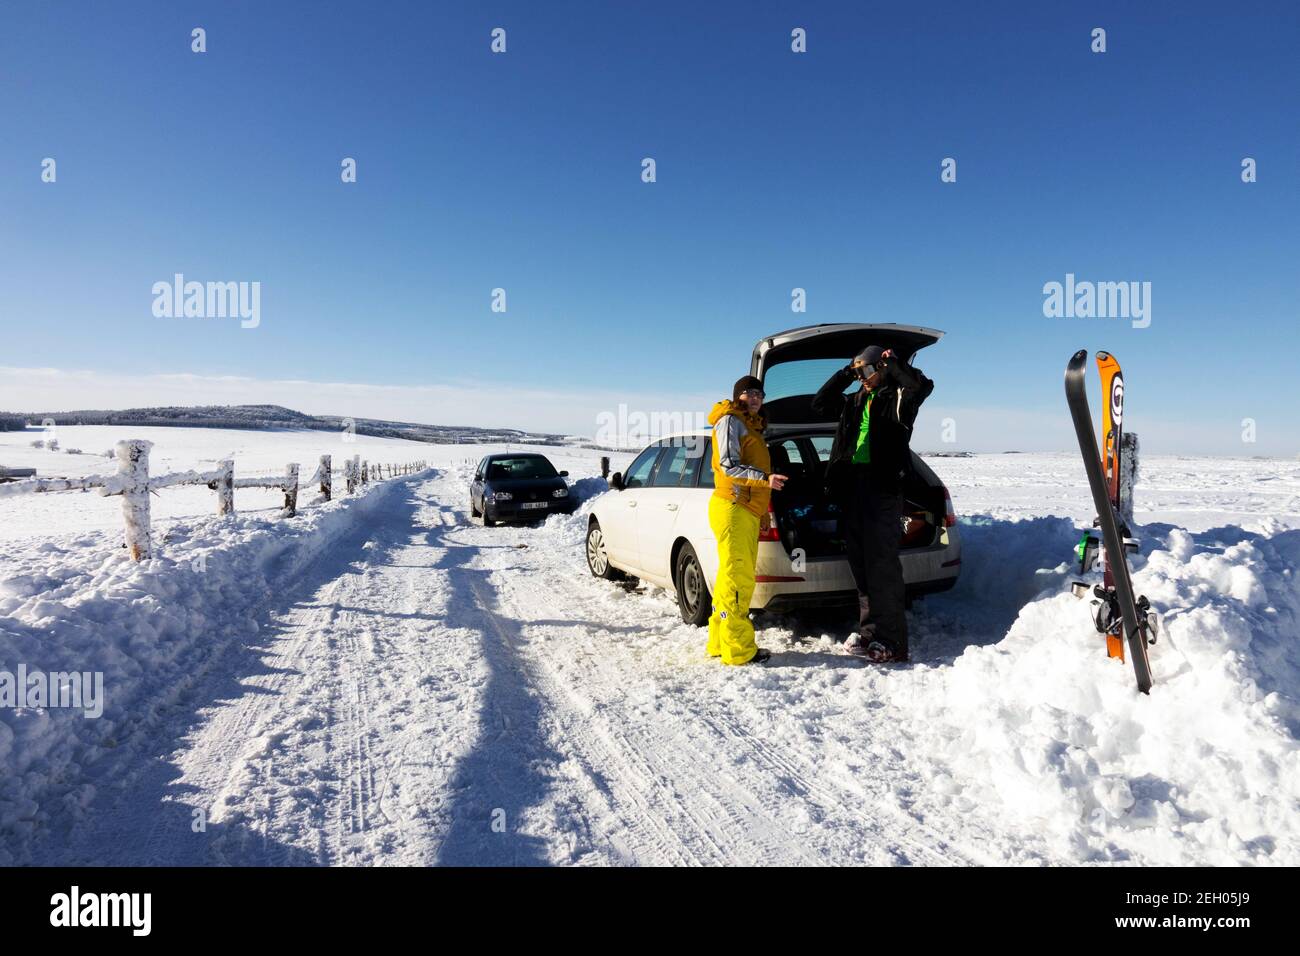 Schneeszene mit Wintersportlern, ein Auto parkt an einer verschneiten Straße, Tschechien Skifahren in den tschechischen Bergen Winterszene Stockfoto